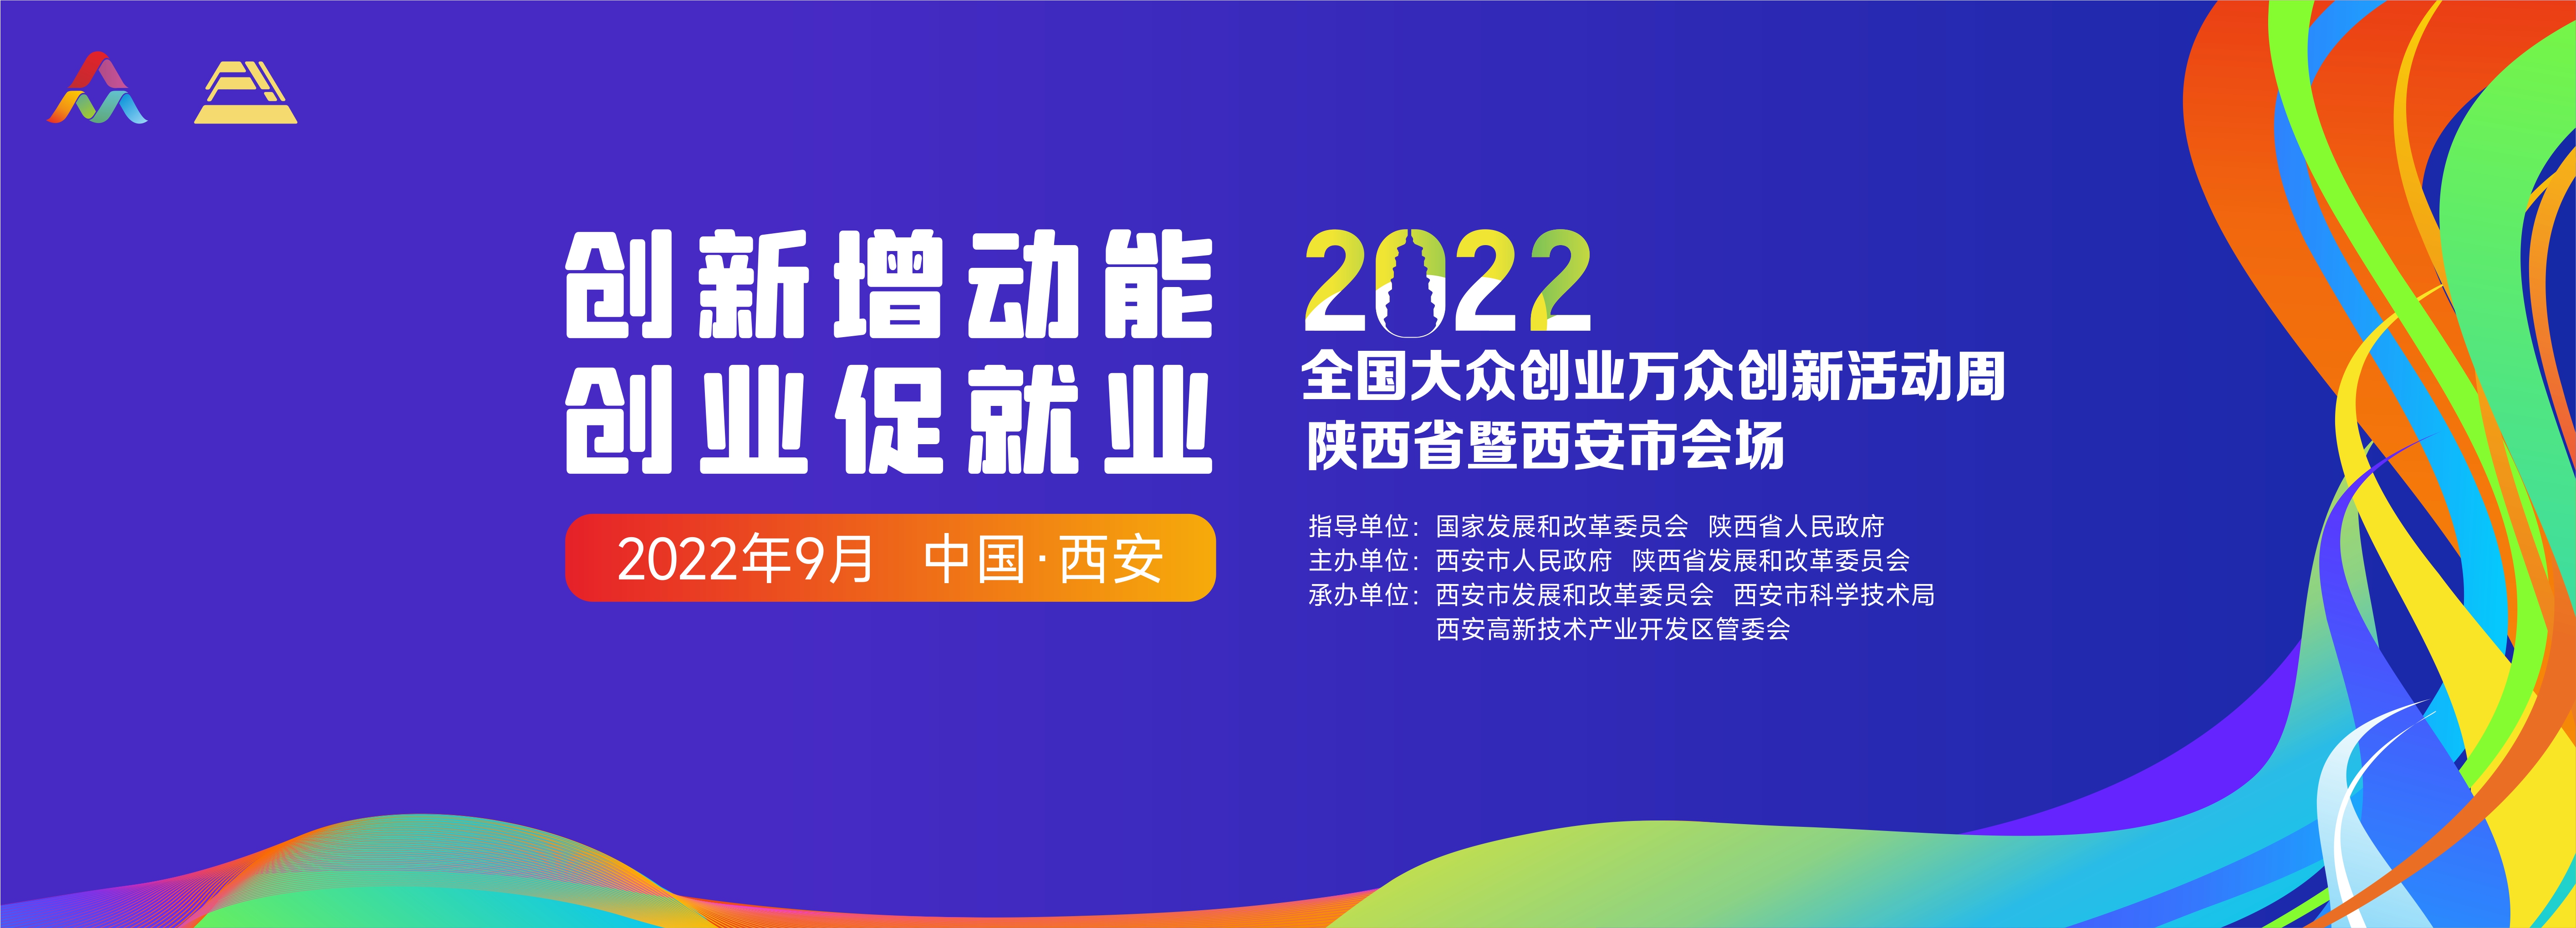 2022年“全国双创周”陕西省暨西安市会场活动9月15日启幕